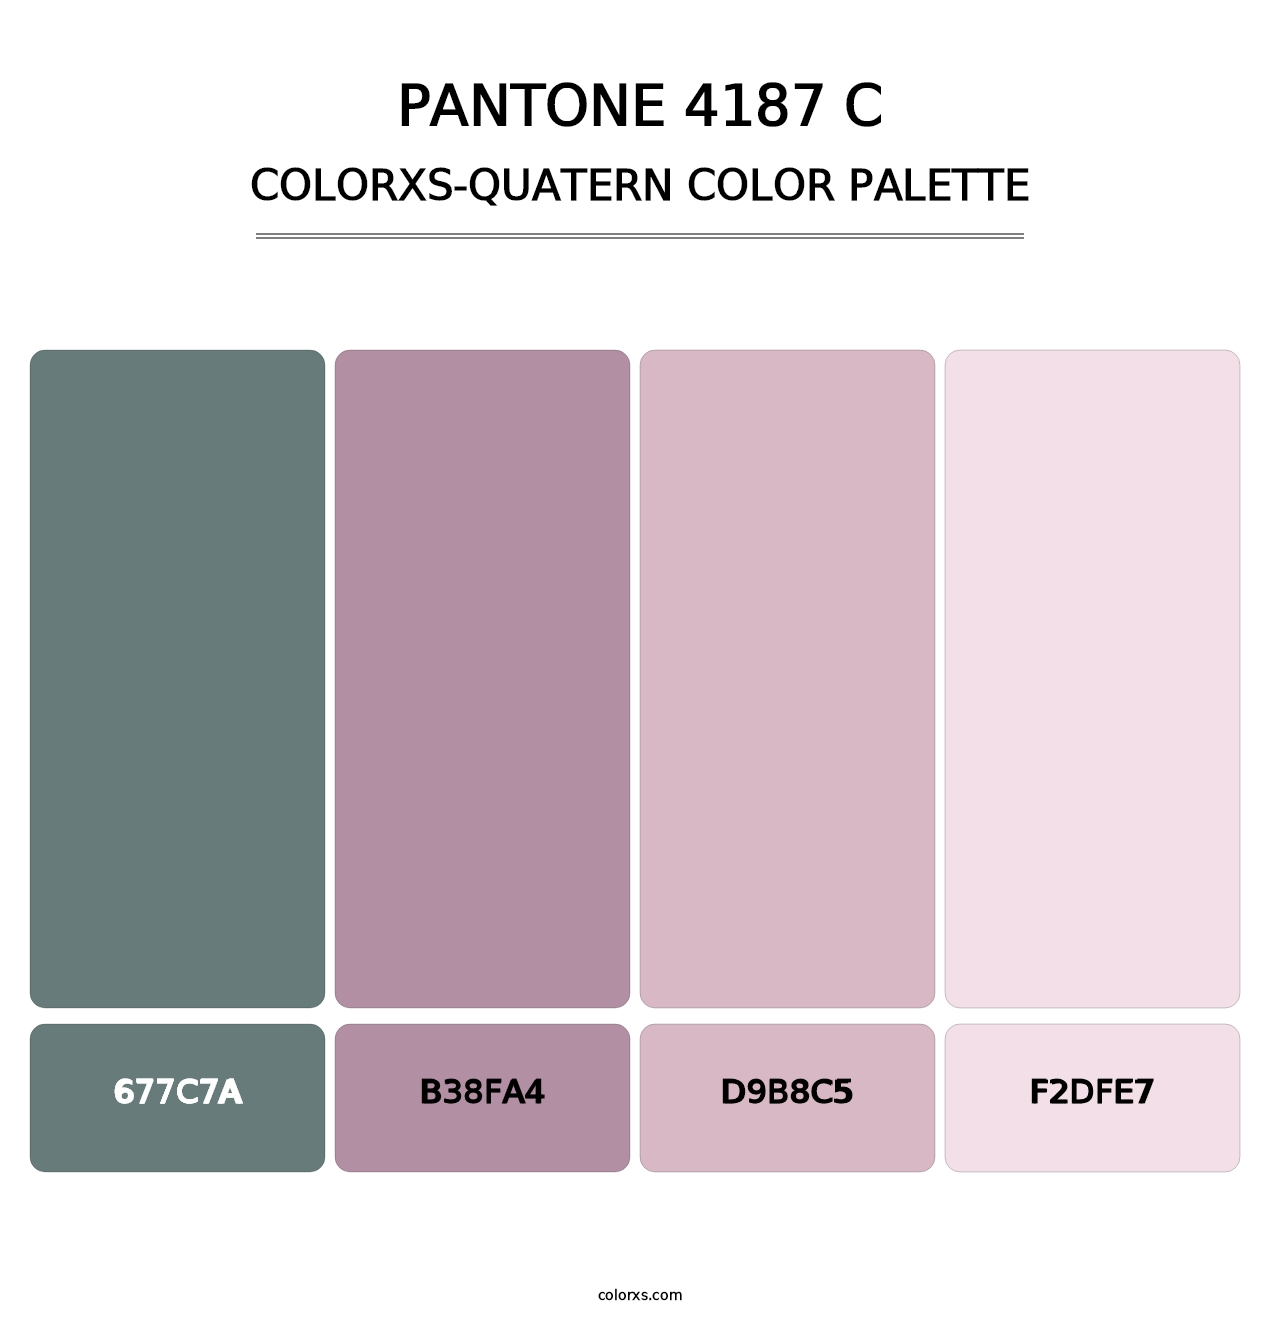 PANTONE 4187 C - Colorxs Quatern Palette